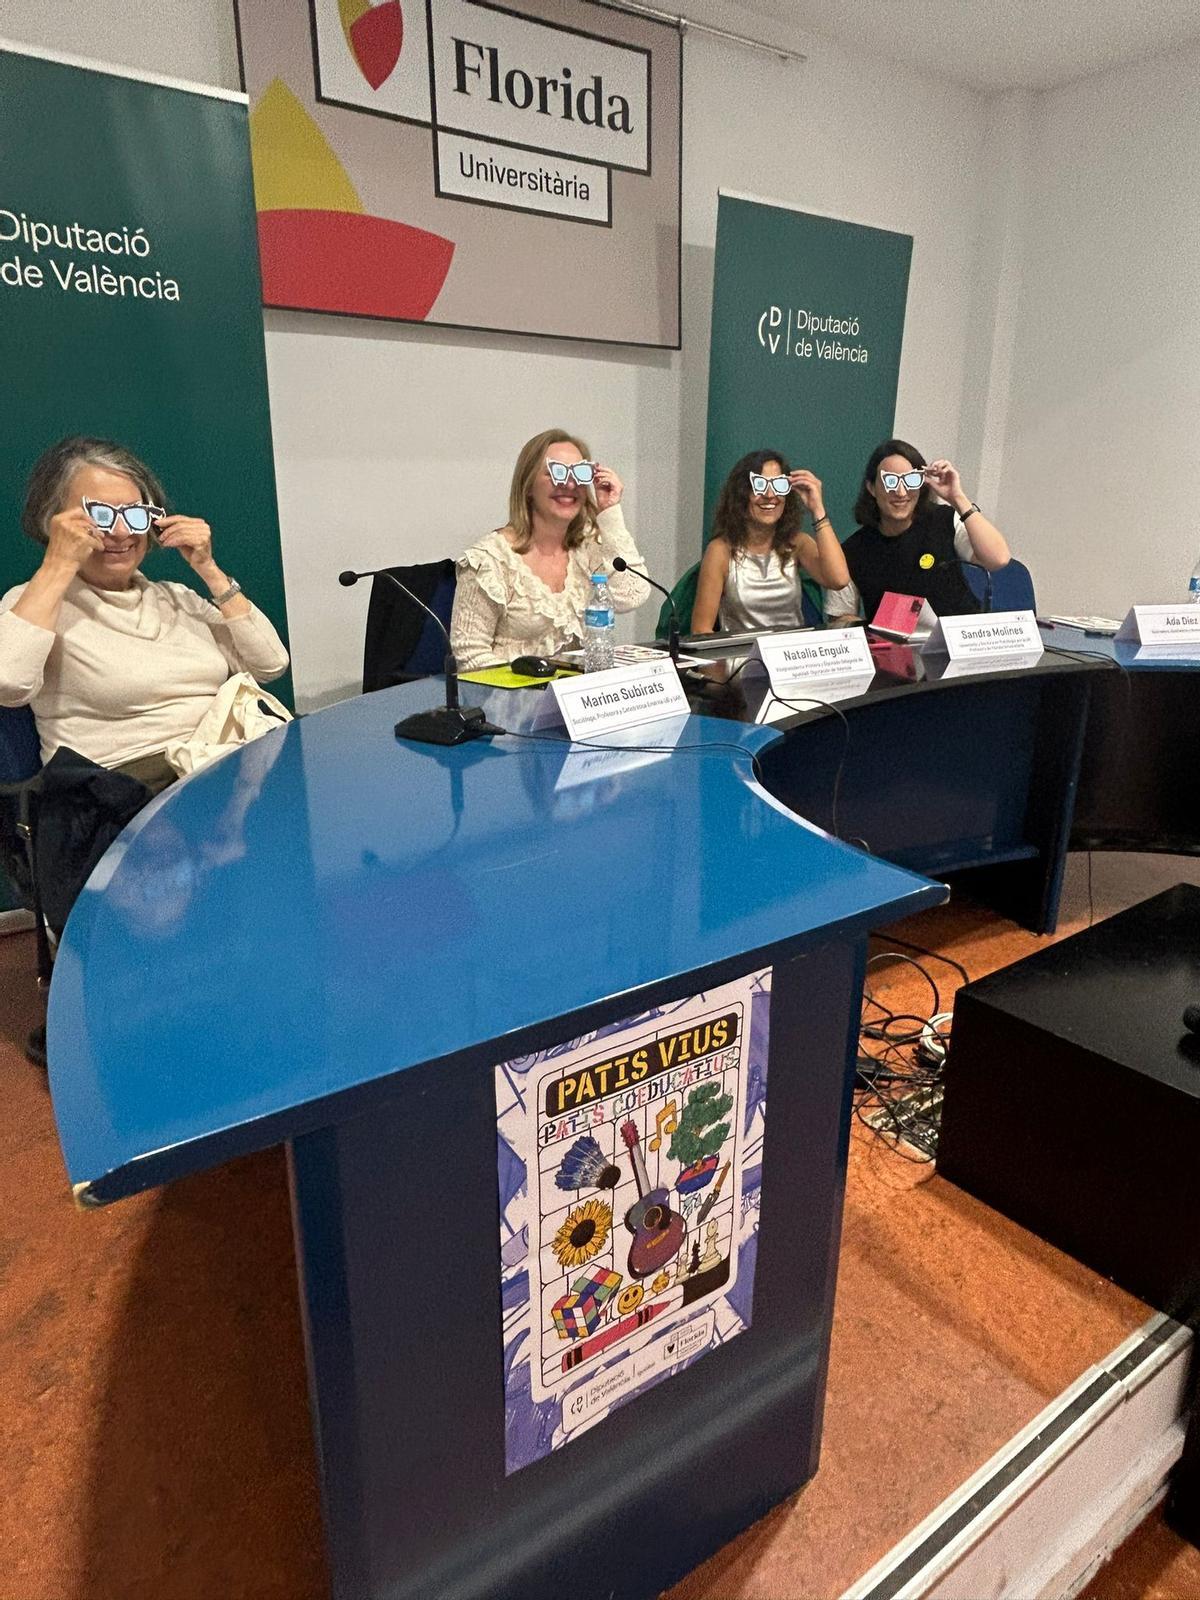 Las participantes en la presentación del libro 'Patis vius, patis coeducatius', con las gafas de la 'coeducación'.